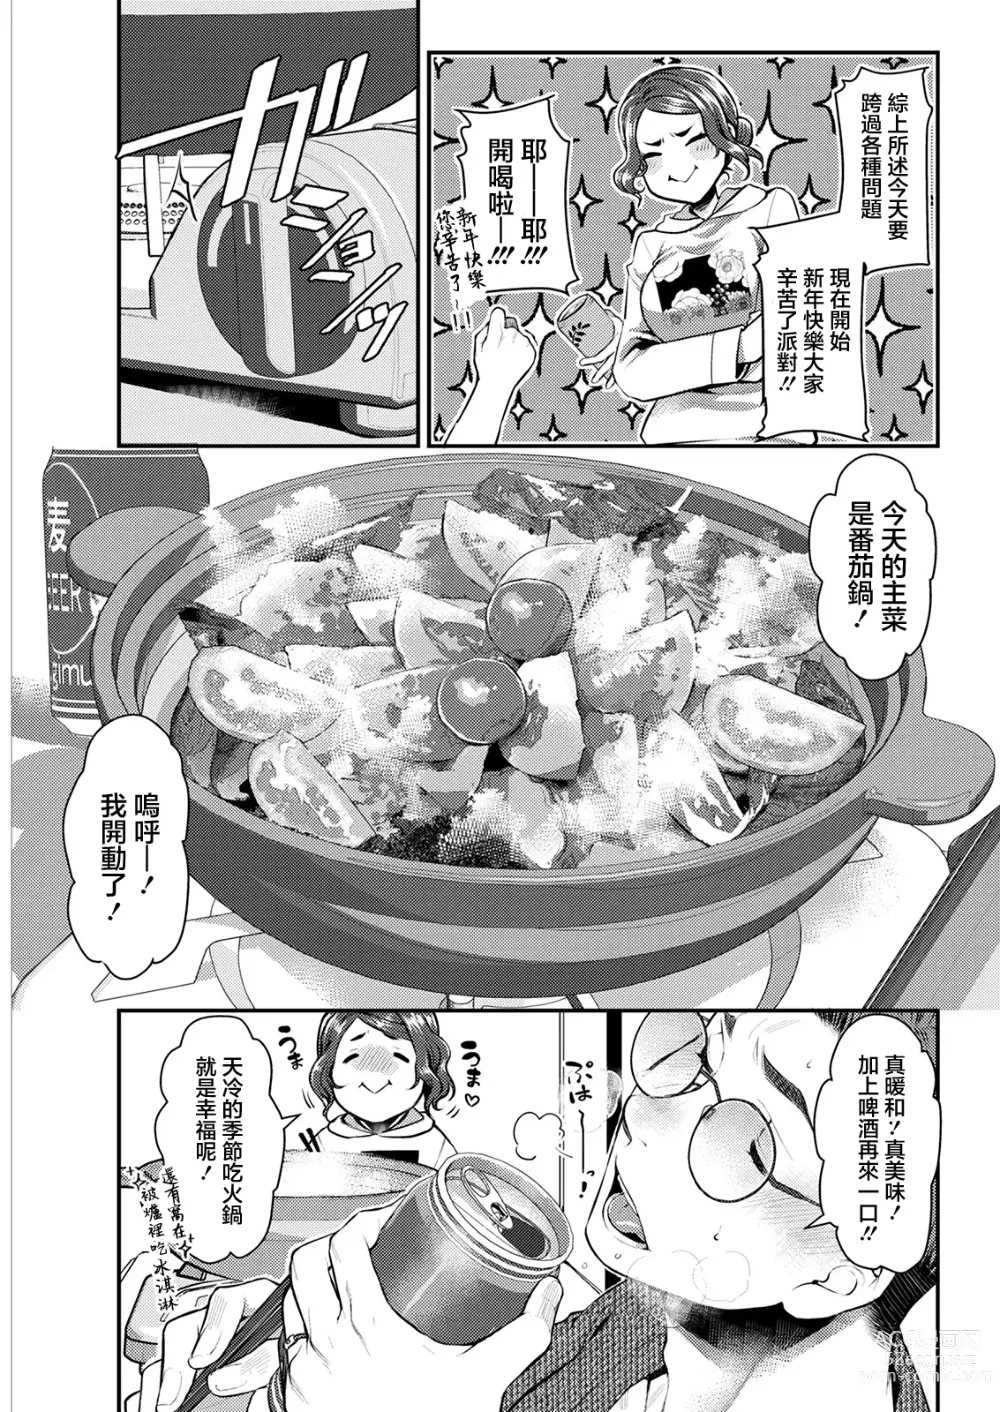 Page 3 of manga Sex x Meshi #5 Tomato Nabe